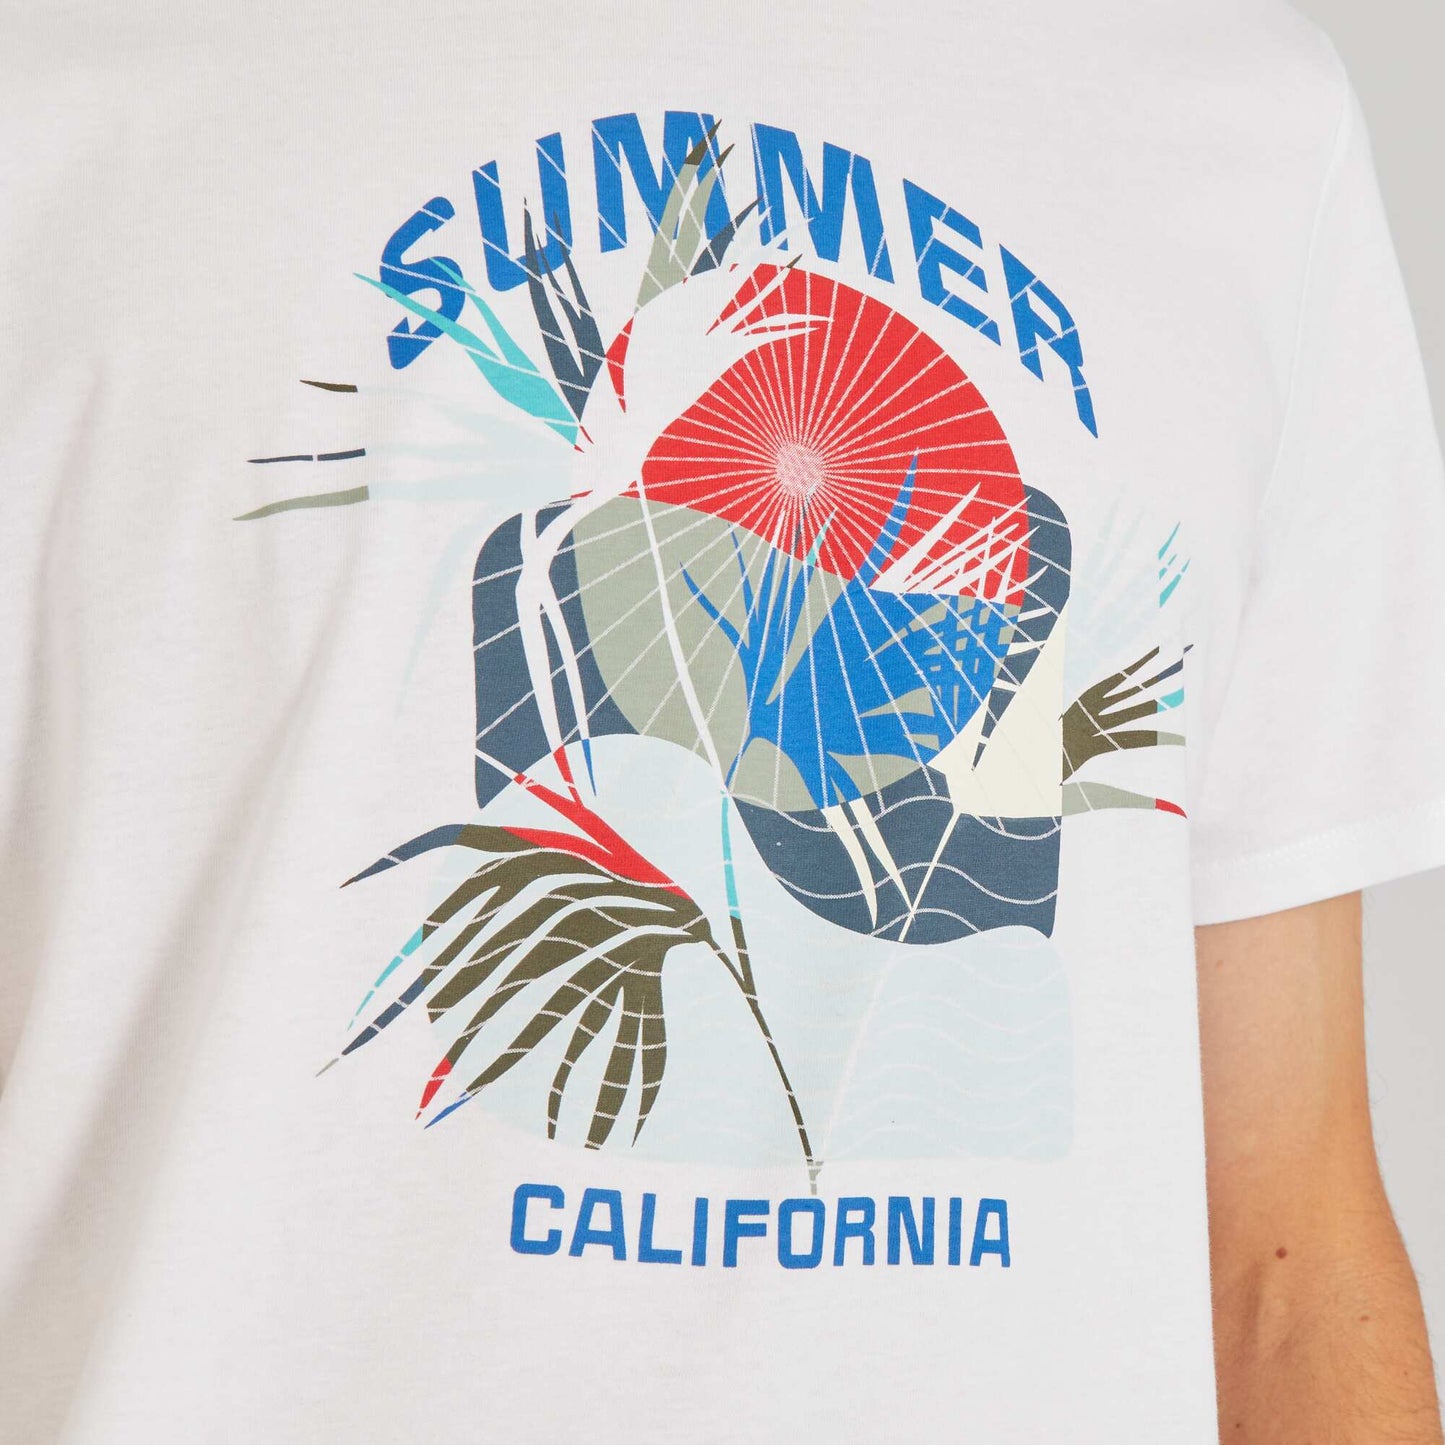 T-shirt imprim fantaisie col rond Blanc 'summer'